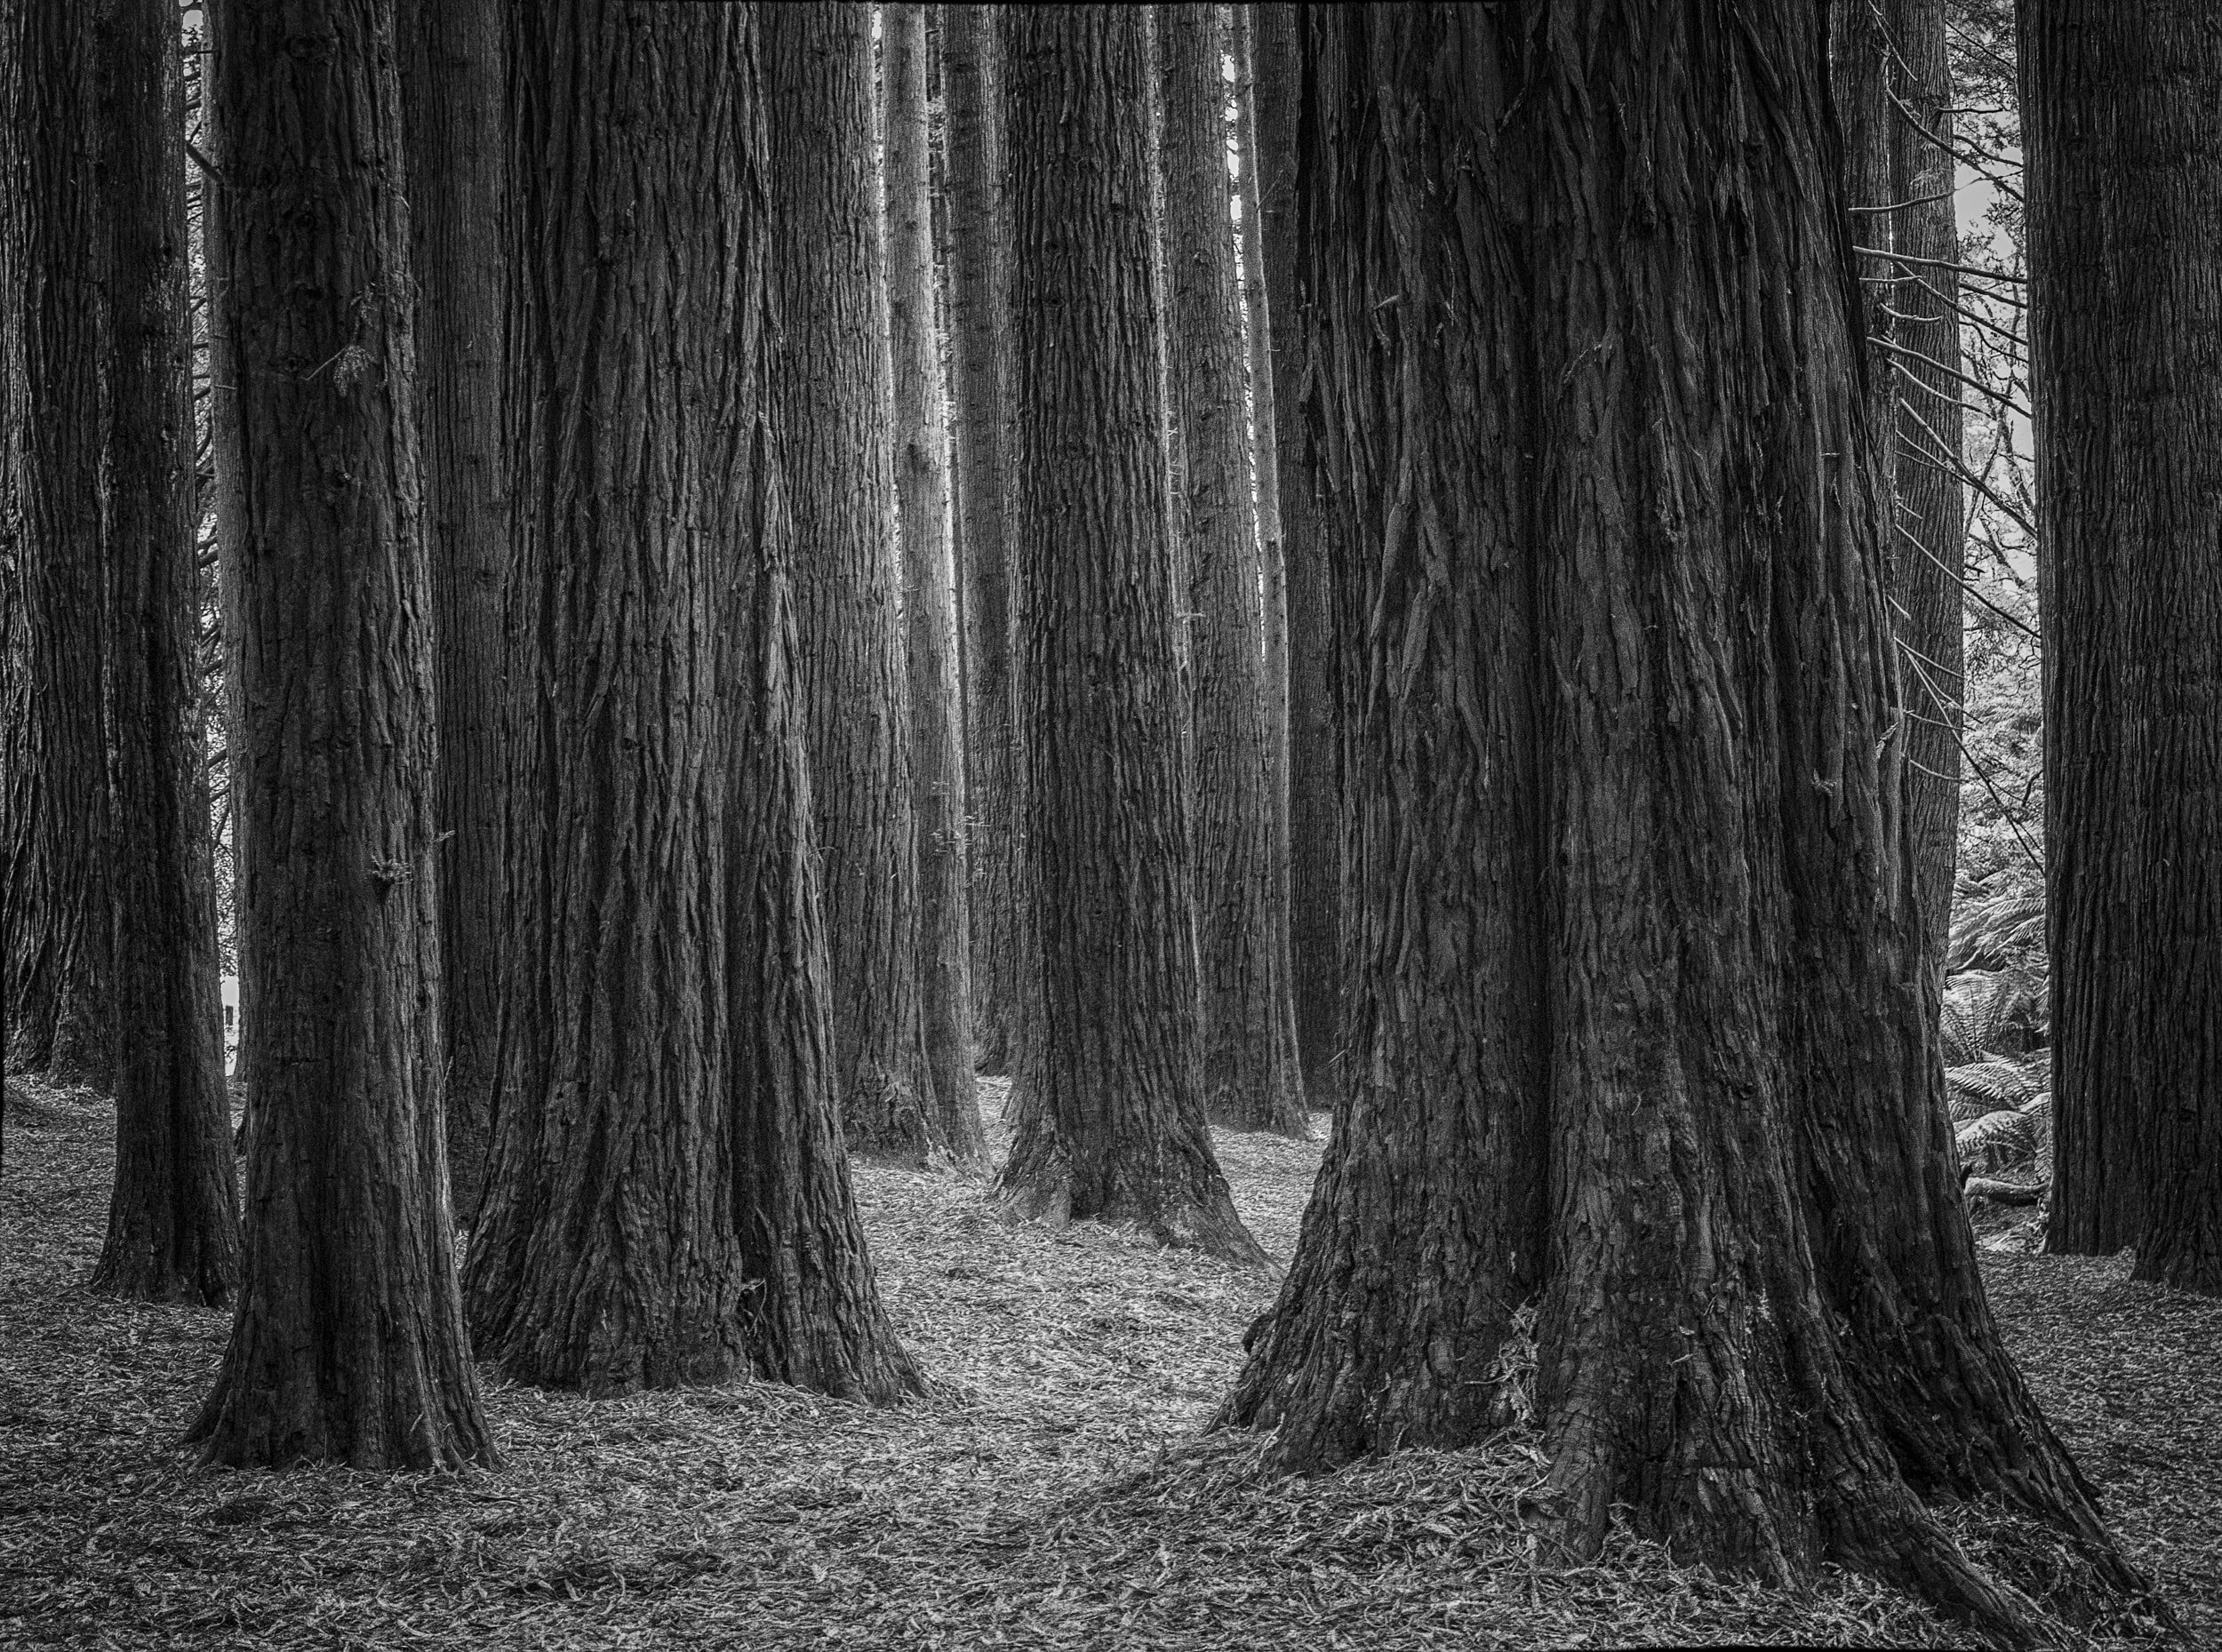 The silent sequoias stand, quiet, still